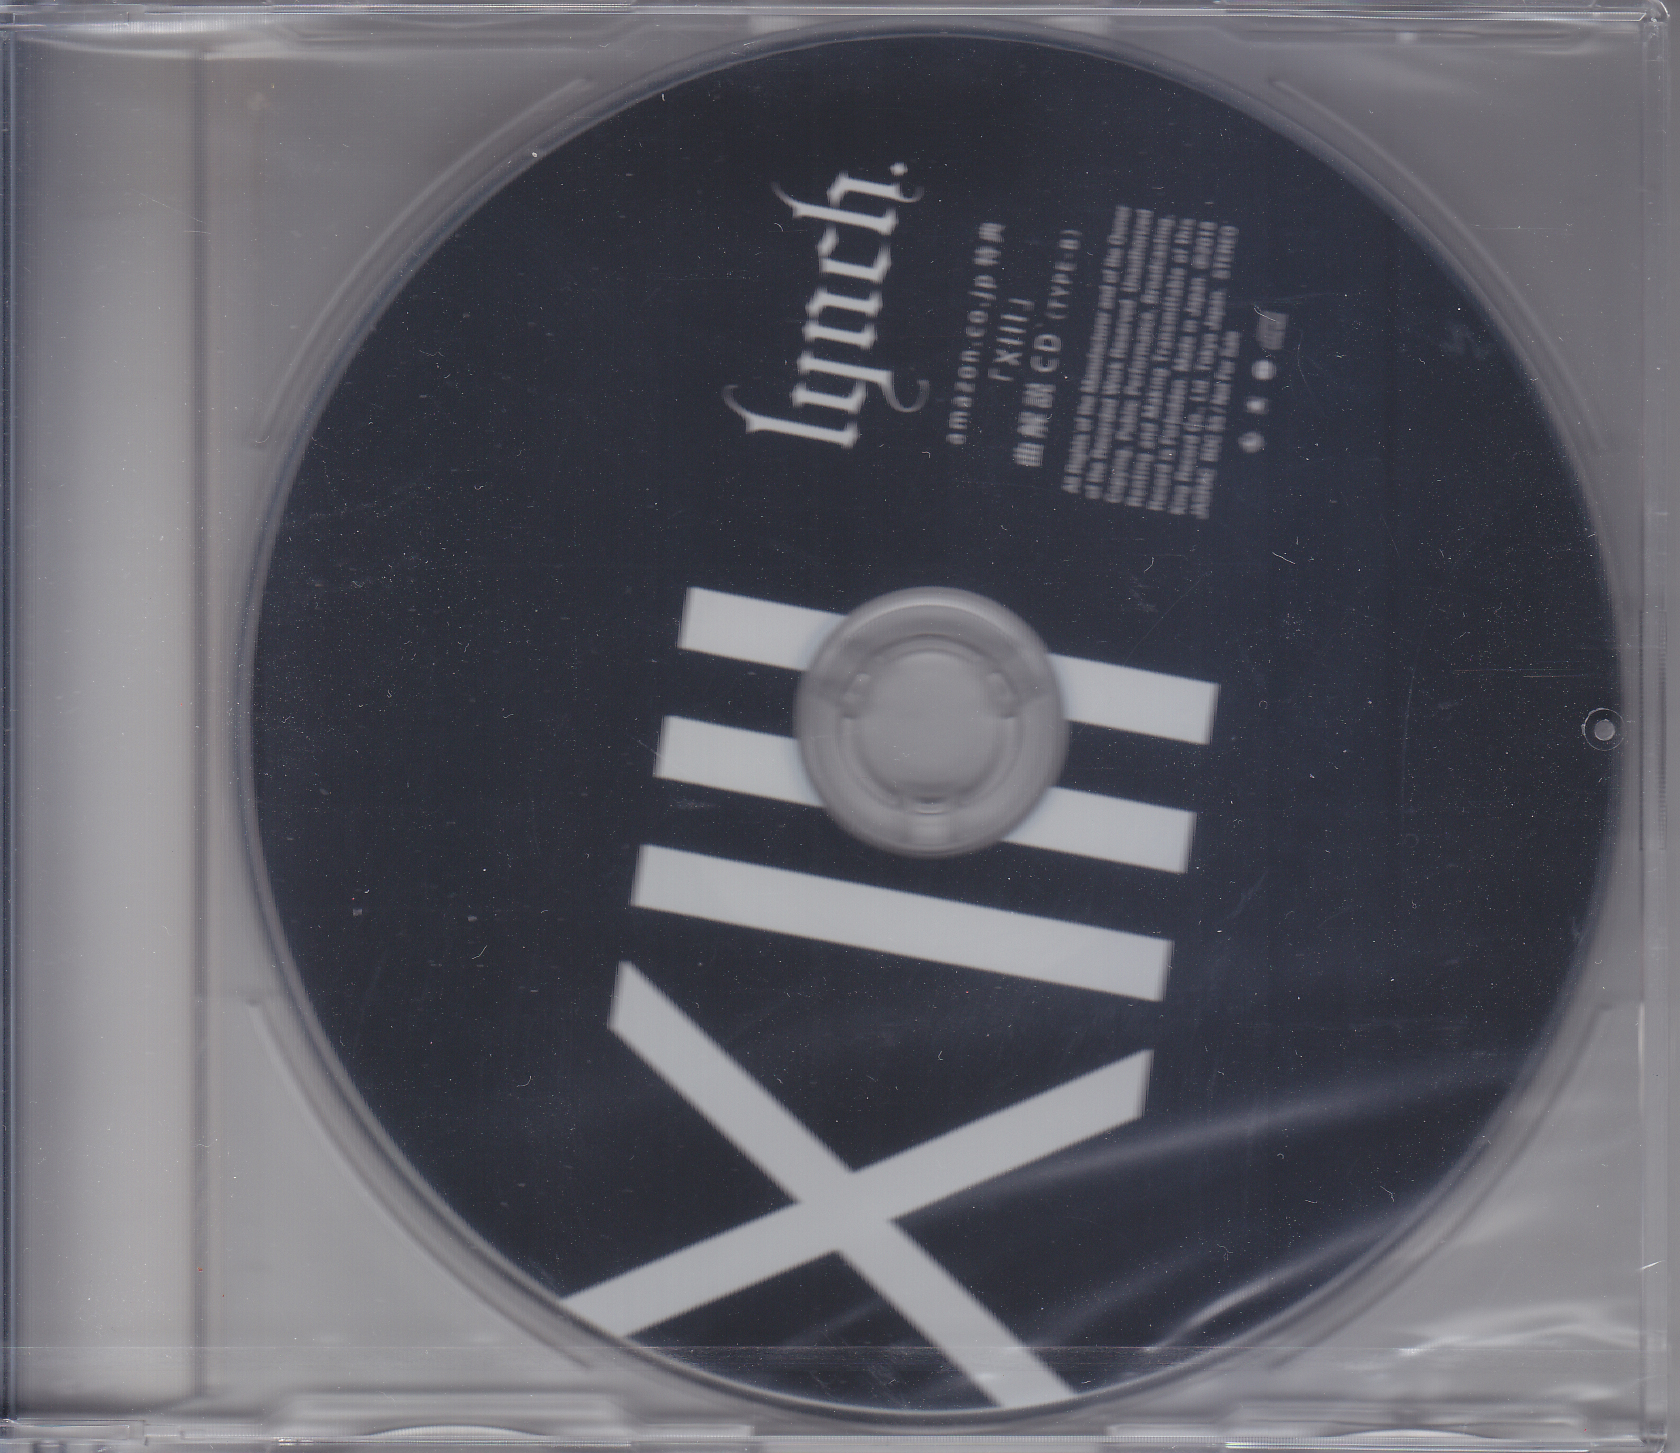 リンチ の CD 「XIII」曲解説CD（TYPE-B）